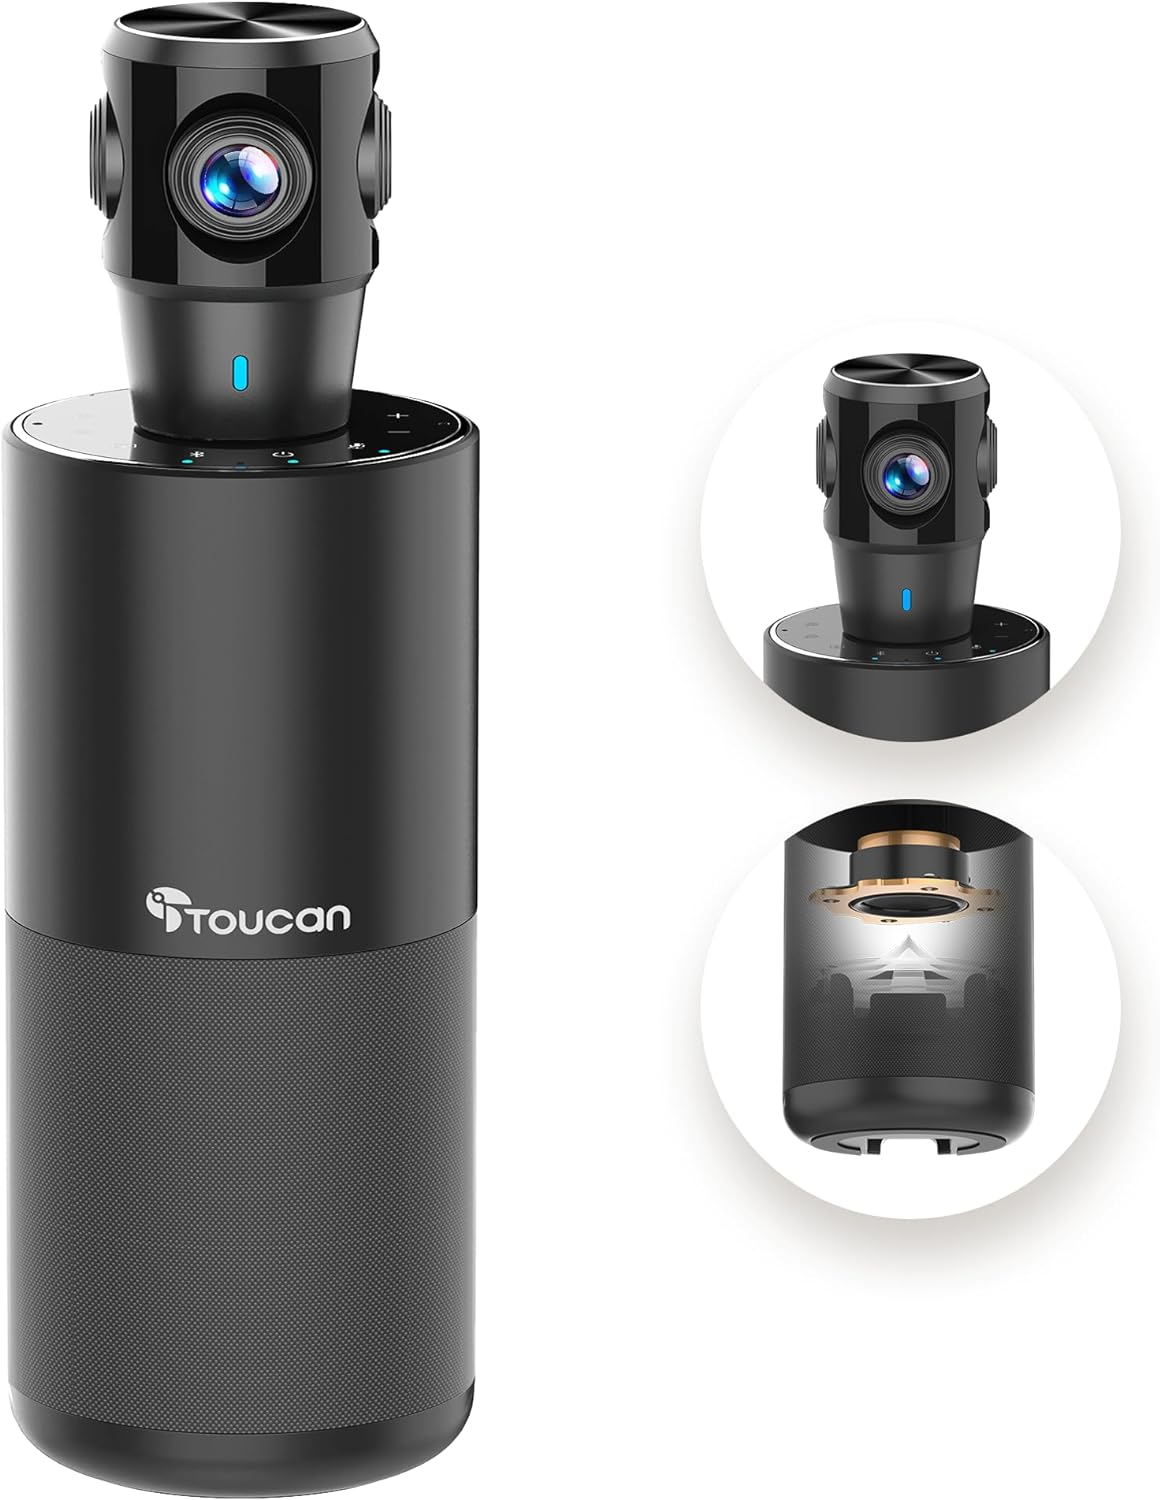  Cameră Video pentru Conferințe TOUCAN 360 de Grade: Tehnologie Avansată pentru Comunicare Impecabilă